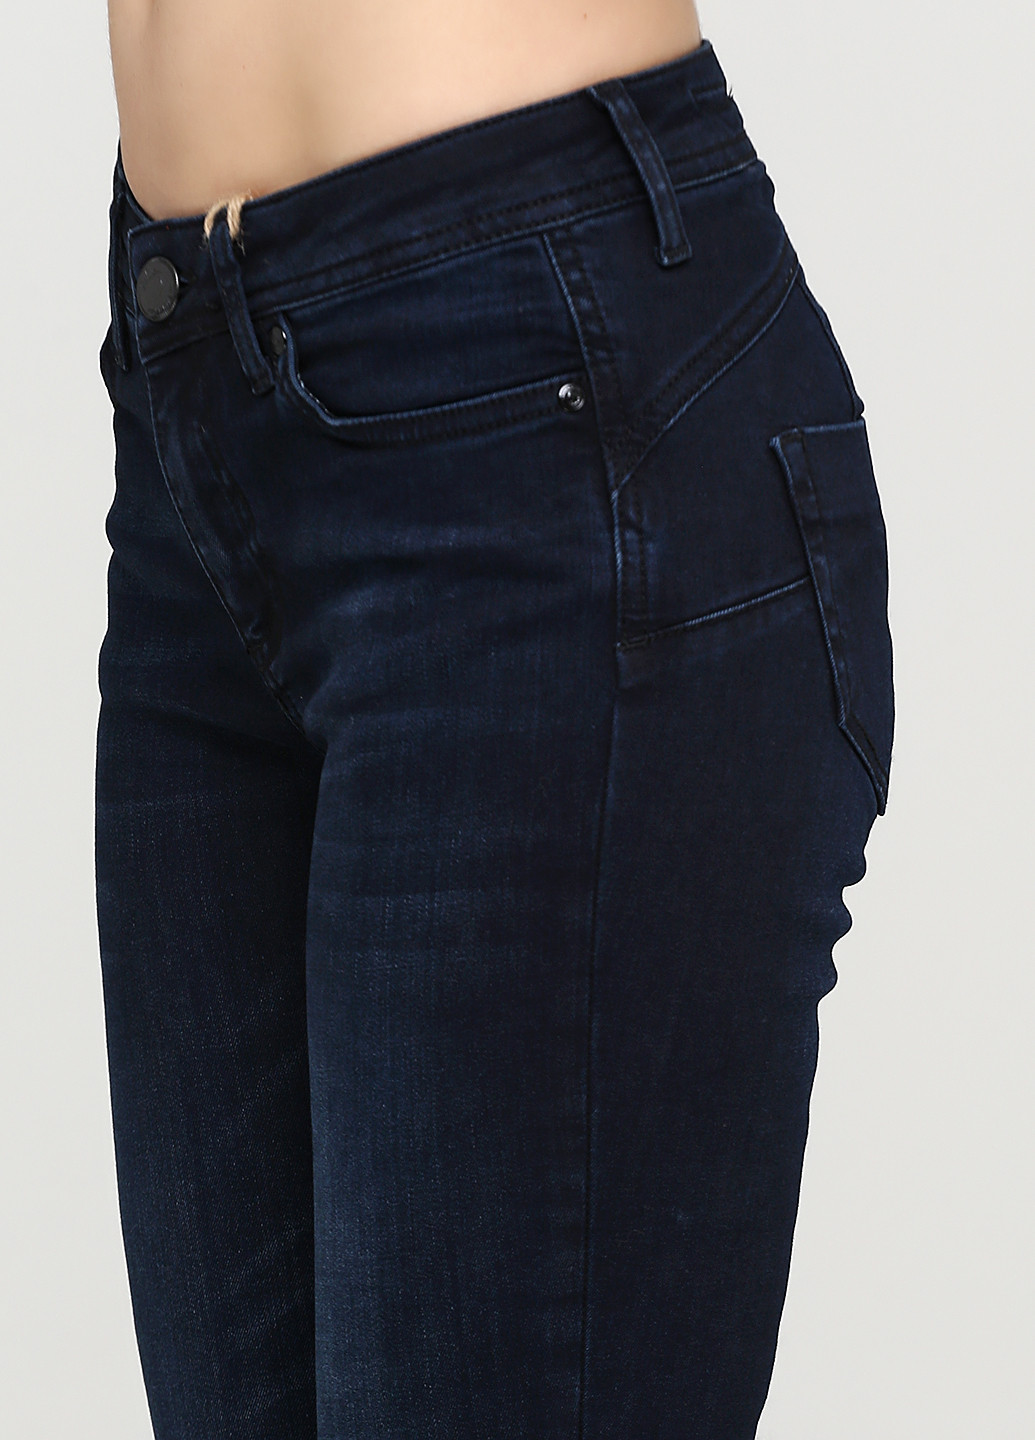 Джинсы Madoc Jeans - (200359063)